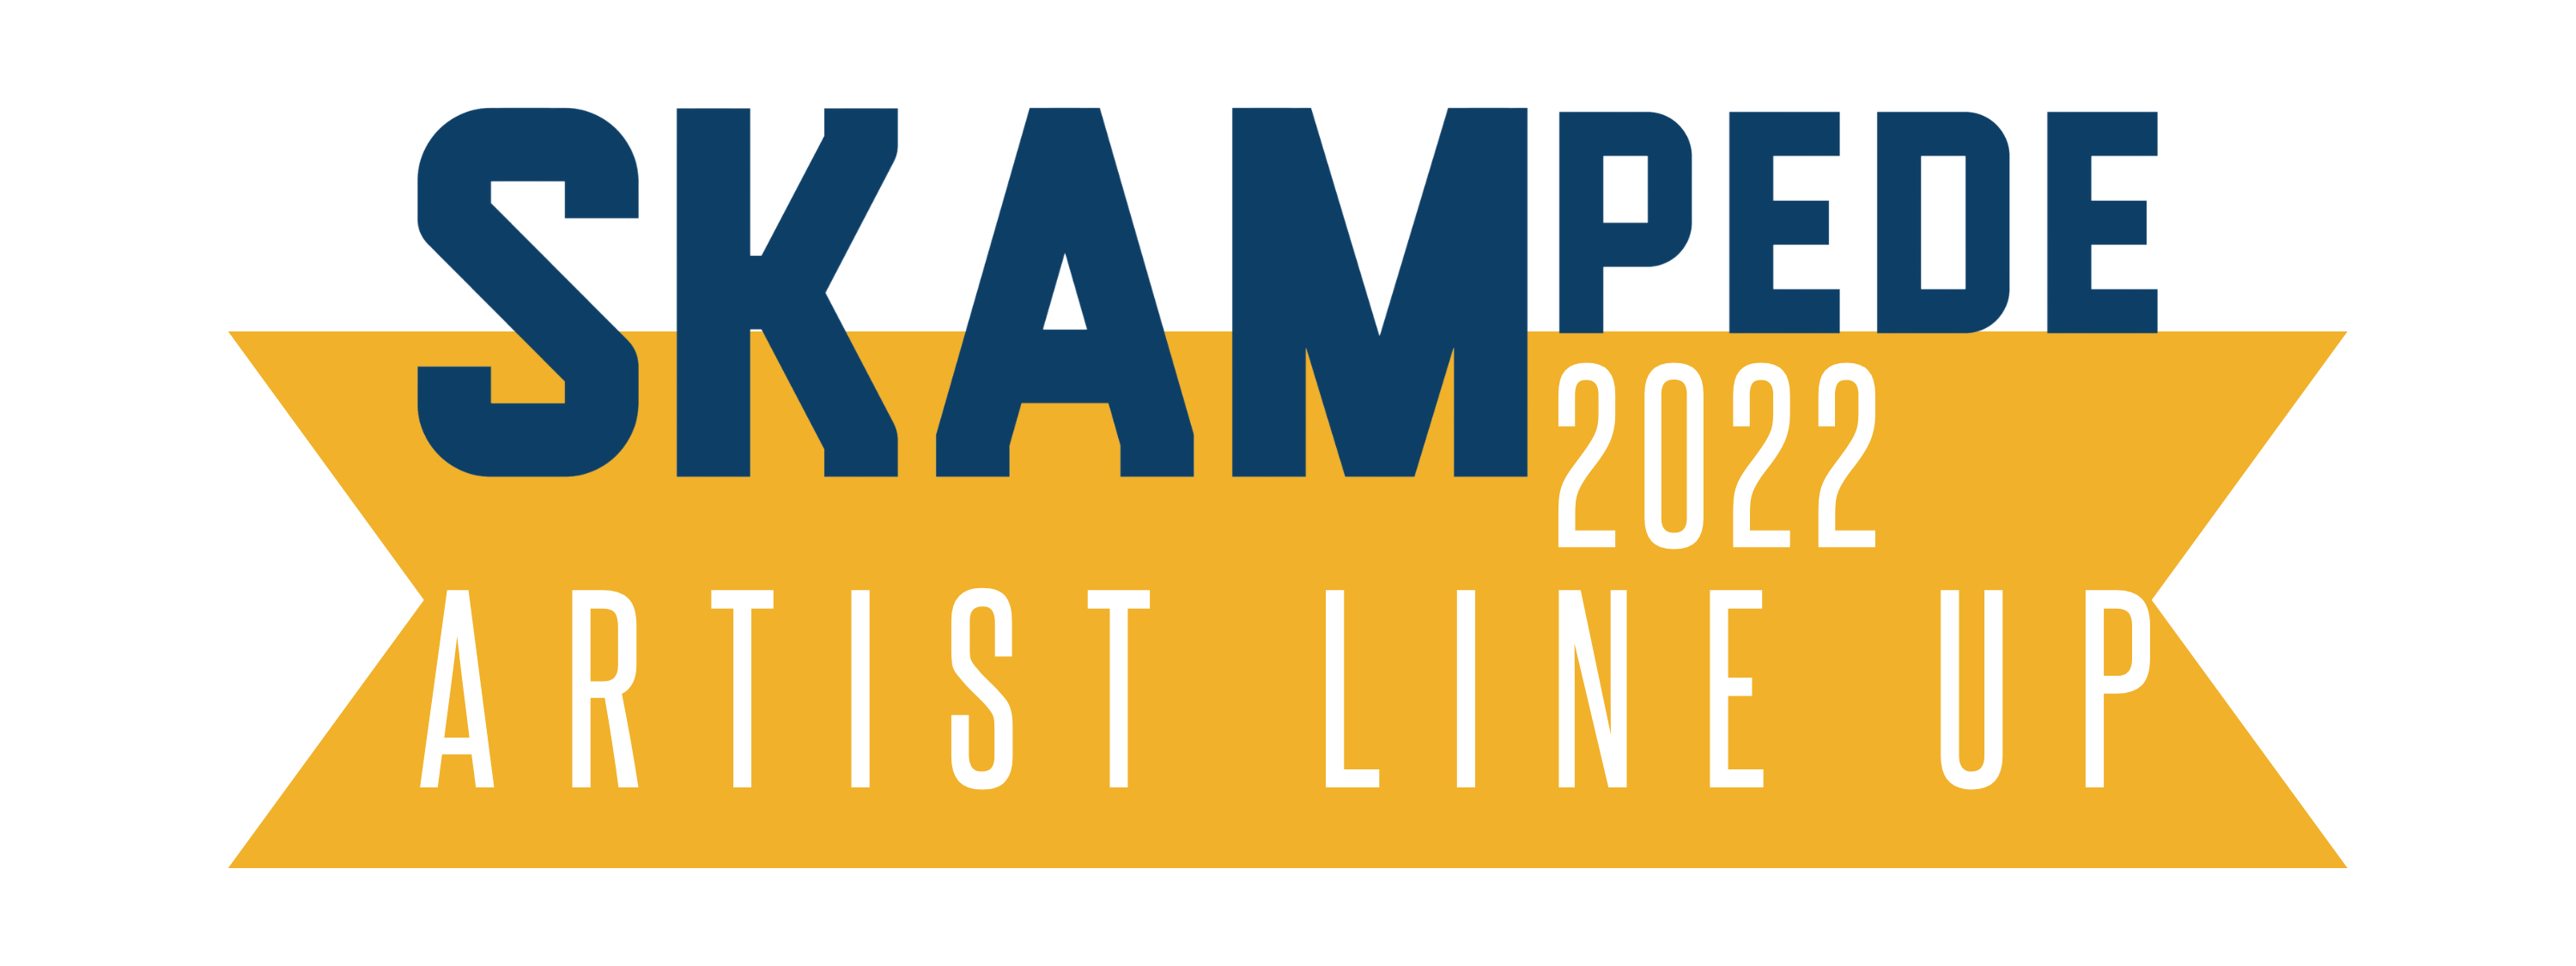 SKAMpede 2022 artist line up